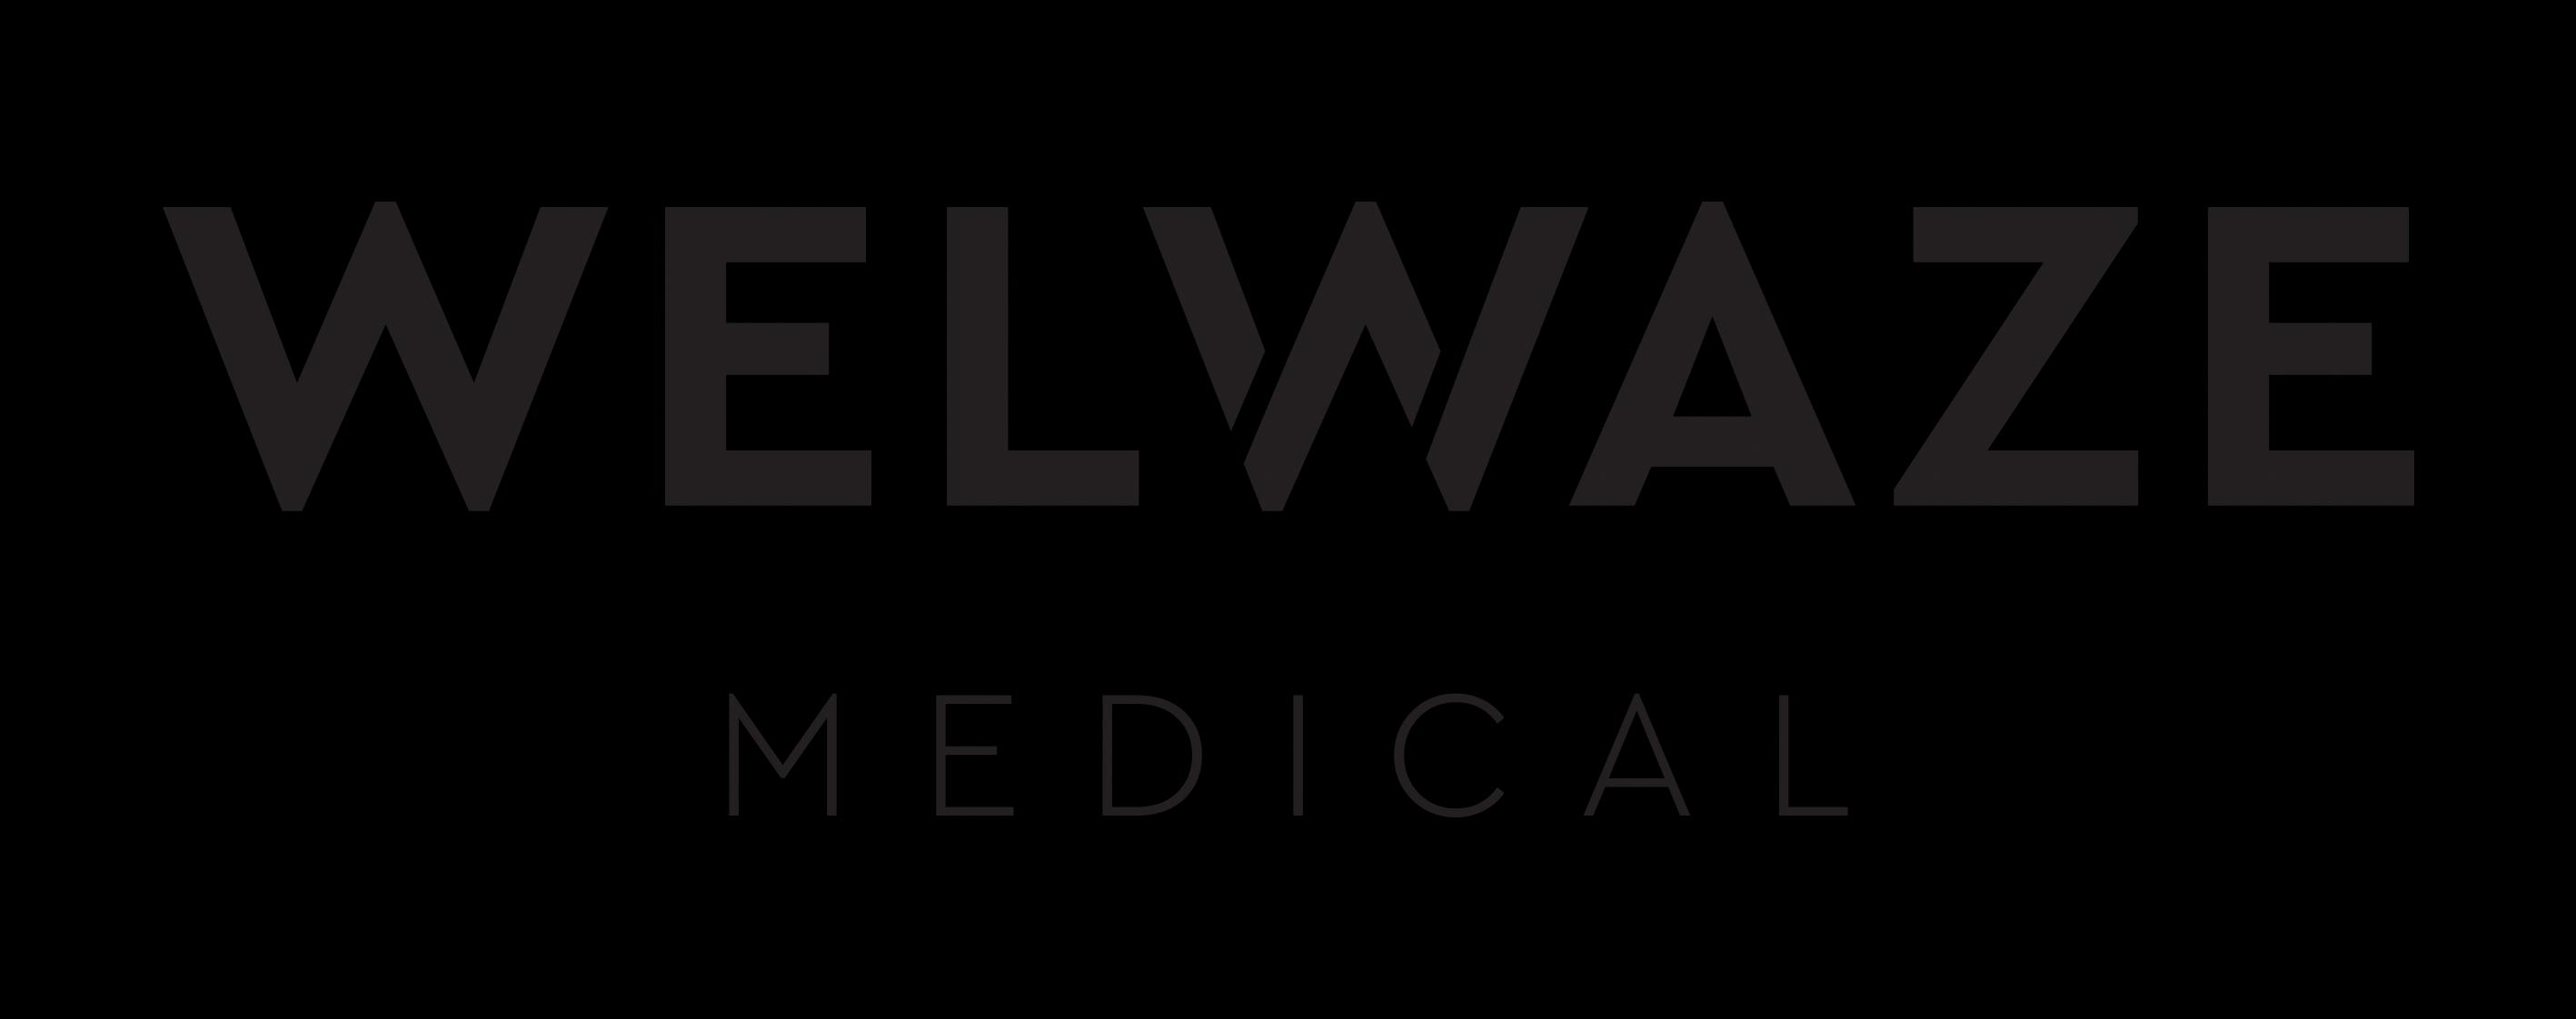 Welwaze Medical_logo